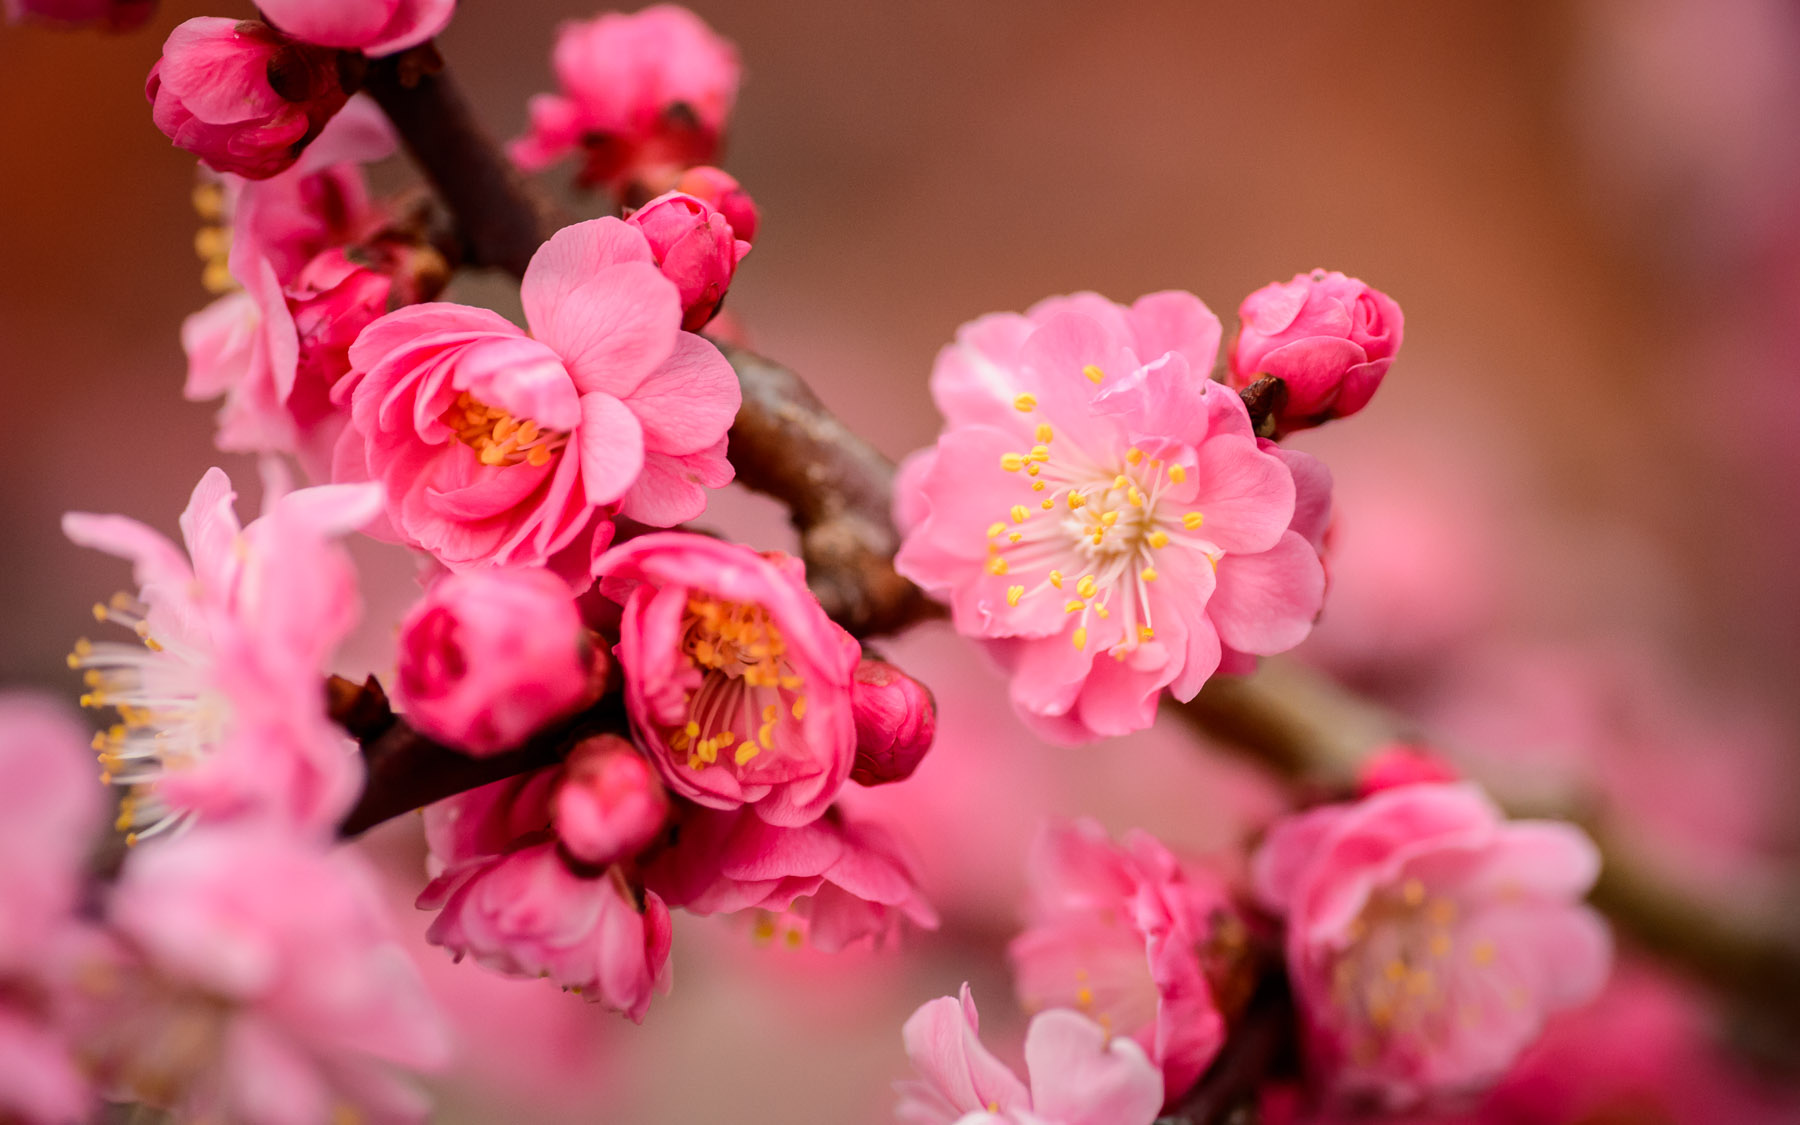 Mặc dù giống hoa này trông giống với hoa đào, nhưng hoa mận lại khác ở chỗ chúng mọc riêng lẻ và không có thân mà mọc thẳng ra từ cành. Những bông hoa màu hồng tươi sáng này tượng trưng cho sự kiên trì và đáng tin cậy, và là một trong những loài hoa biểu tượng quan trọng nhất đối với người Trung Quốc. Hoa mai, cùng với hoa lan (tinh khiết), trúc (ngay thẳng) và hoa cúc (khiêm tốn), tạo thành 'tứ quý' vì hình ảnh của chúng thường được sử dụng trong các tác phẩm văn học và nghệ thuật đại diện cho các đức tính được coi trọng trong truyền thống Trung Quốc.